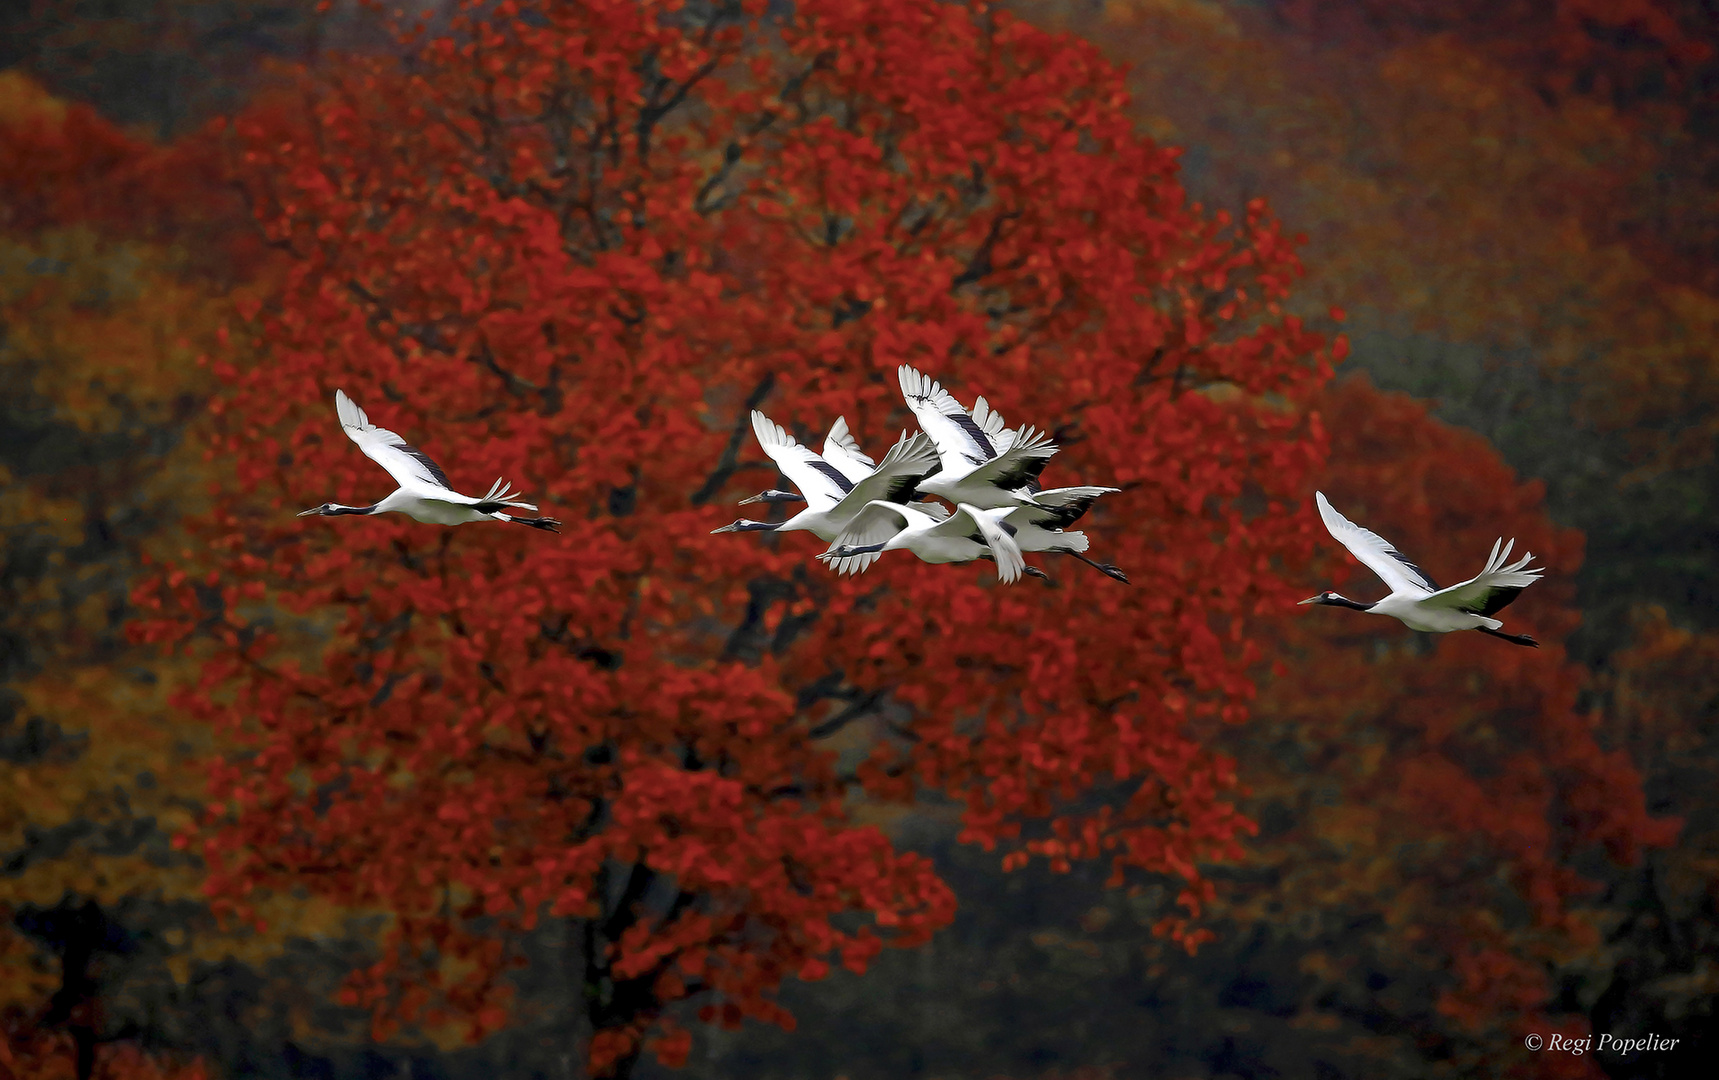 Autumn flight